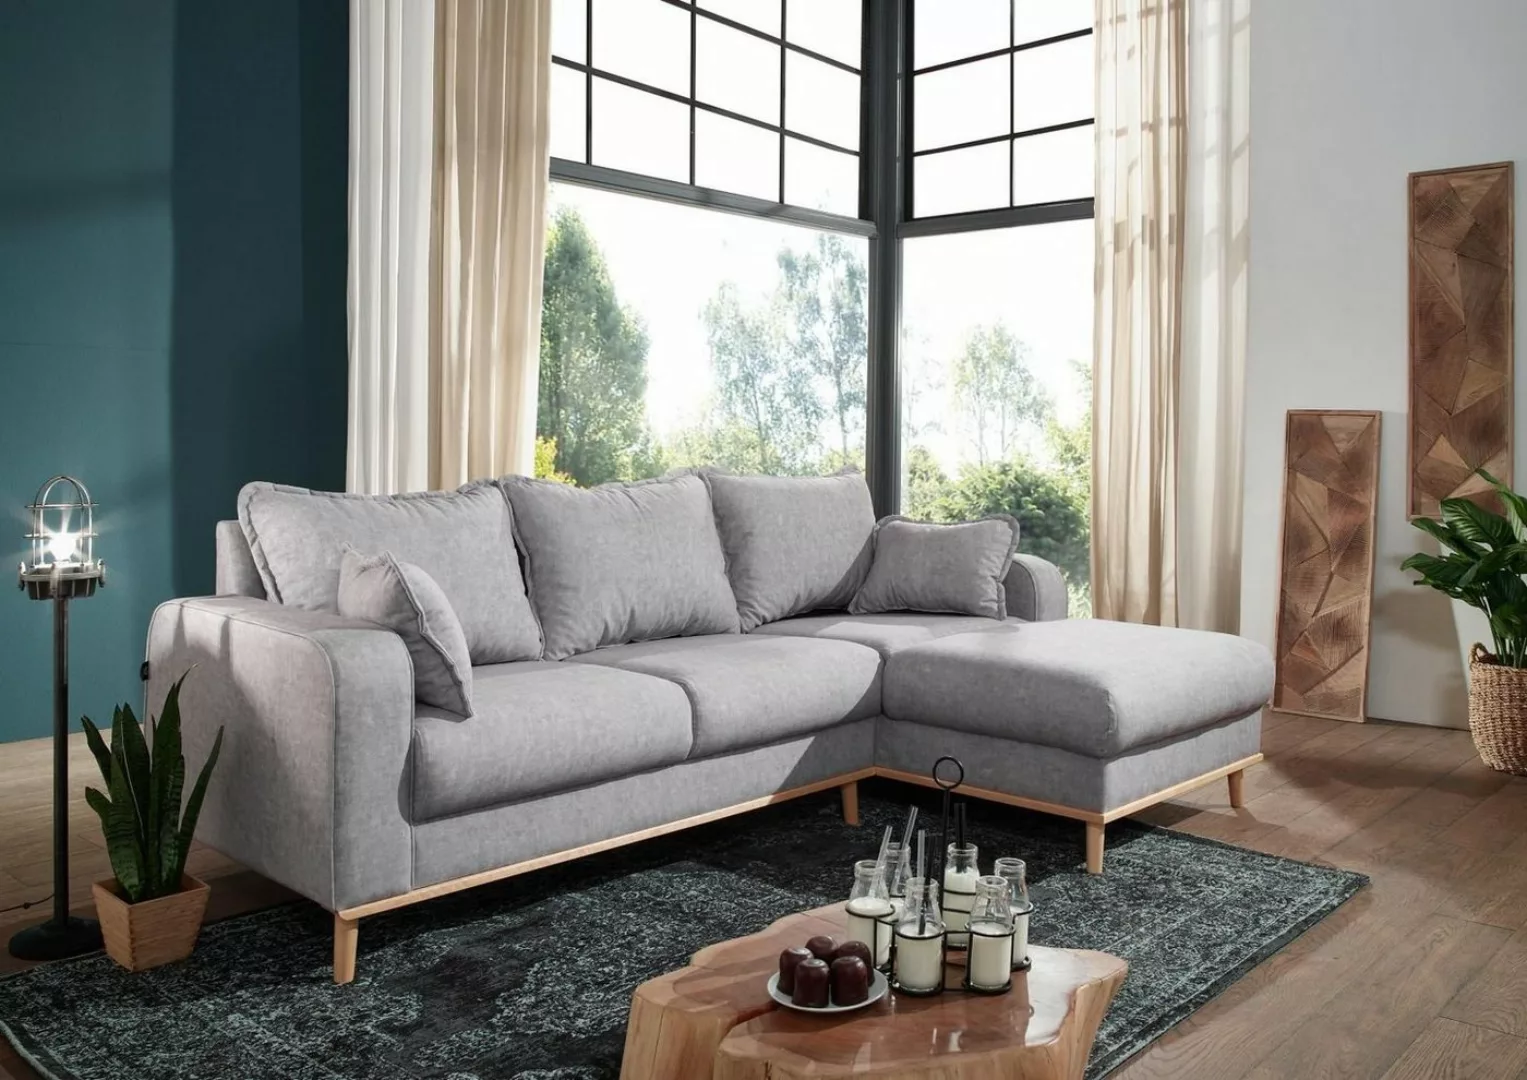 Massivmoebel24 Ecksofa Sofa inklusive Kissen 230x154x84 grau Ottomane recht günstig online kaufen